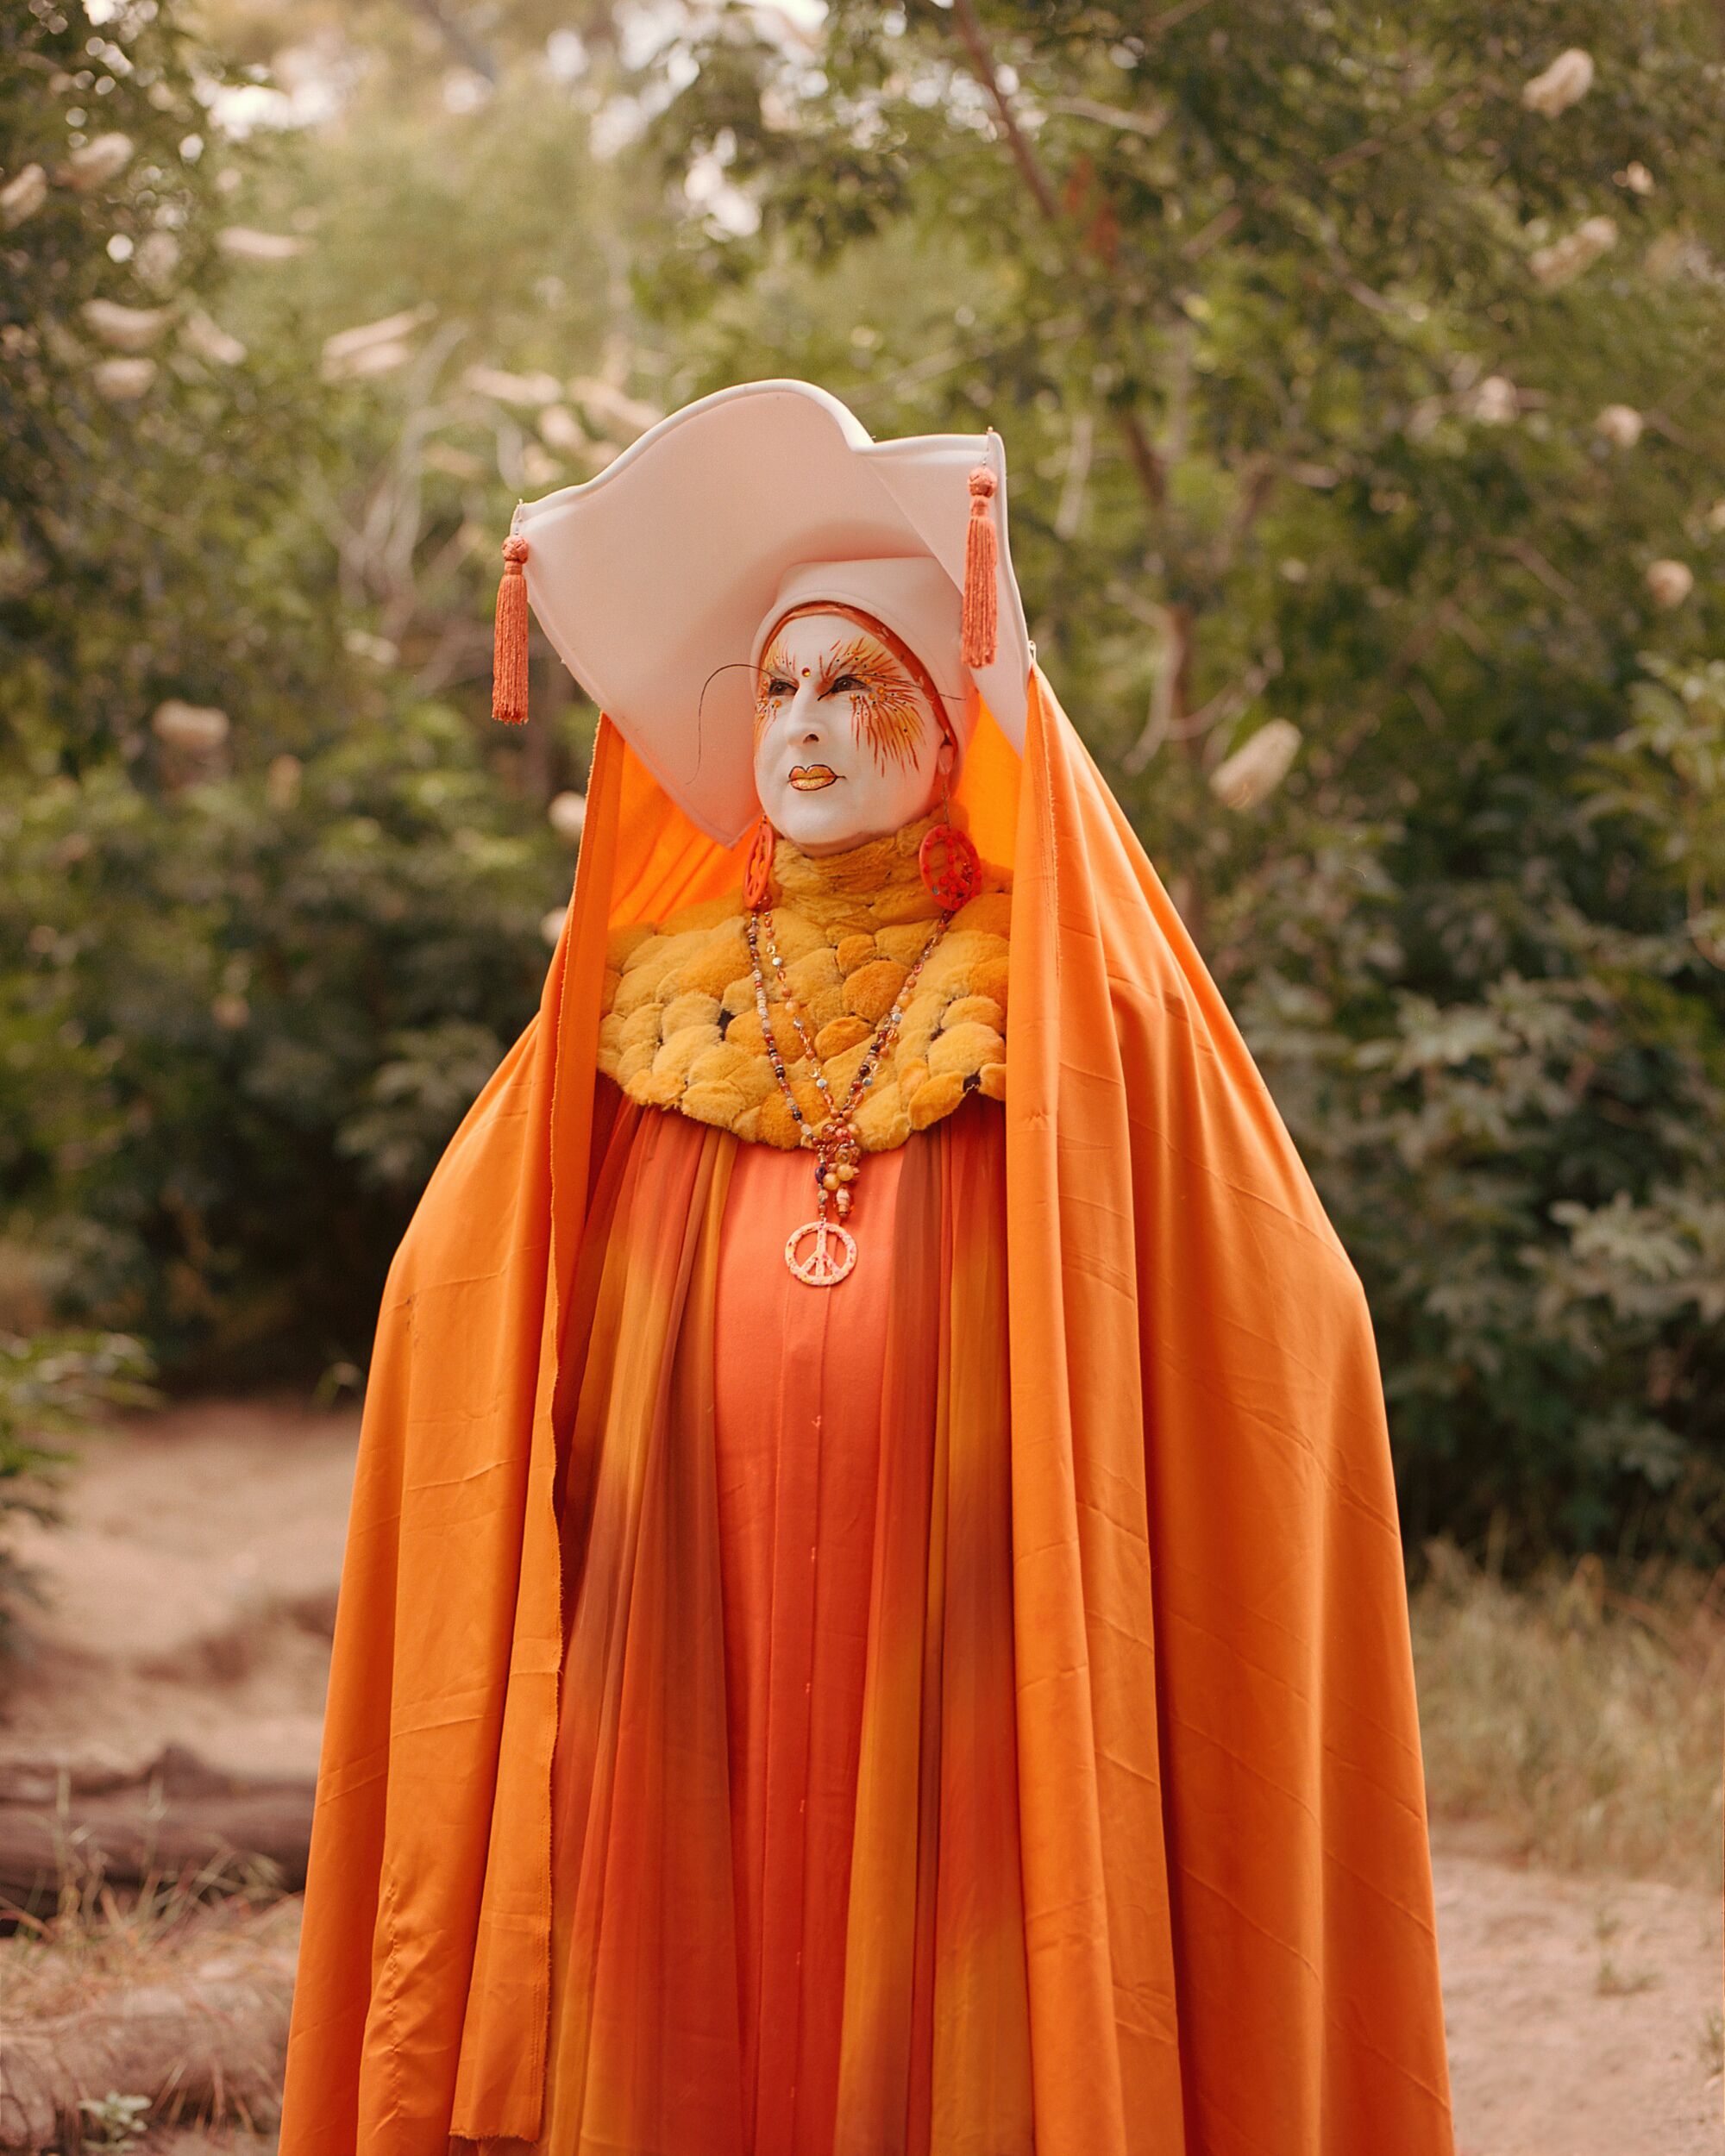 Eine Drag-Nonne mit weißer Gesichtsbemalung, Wimpole und aufwendigem orangefarbenem Kleid und Umhang.